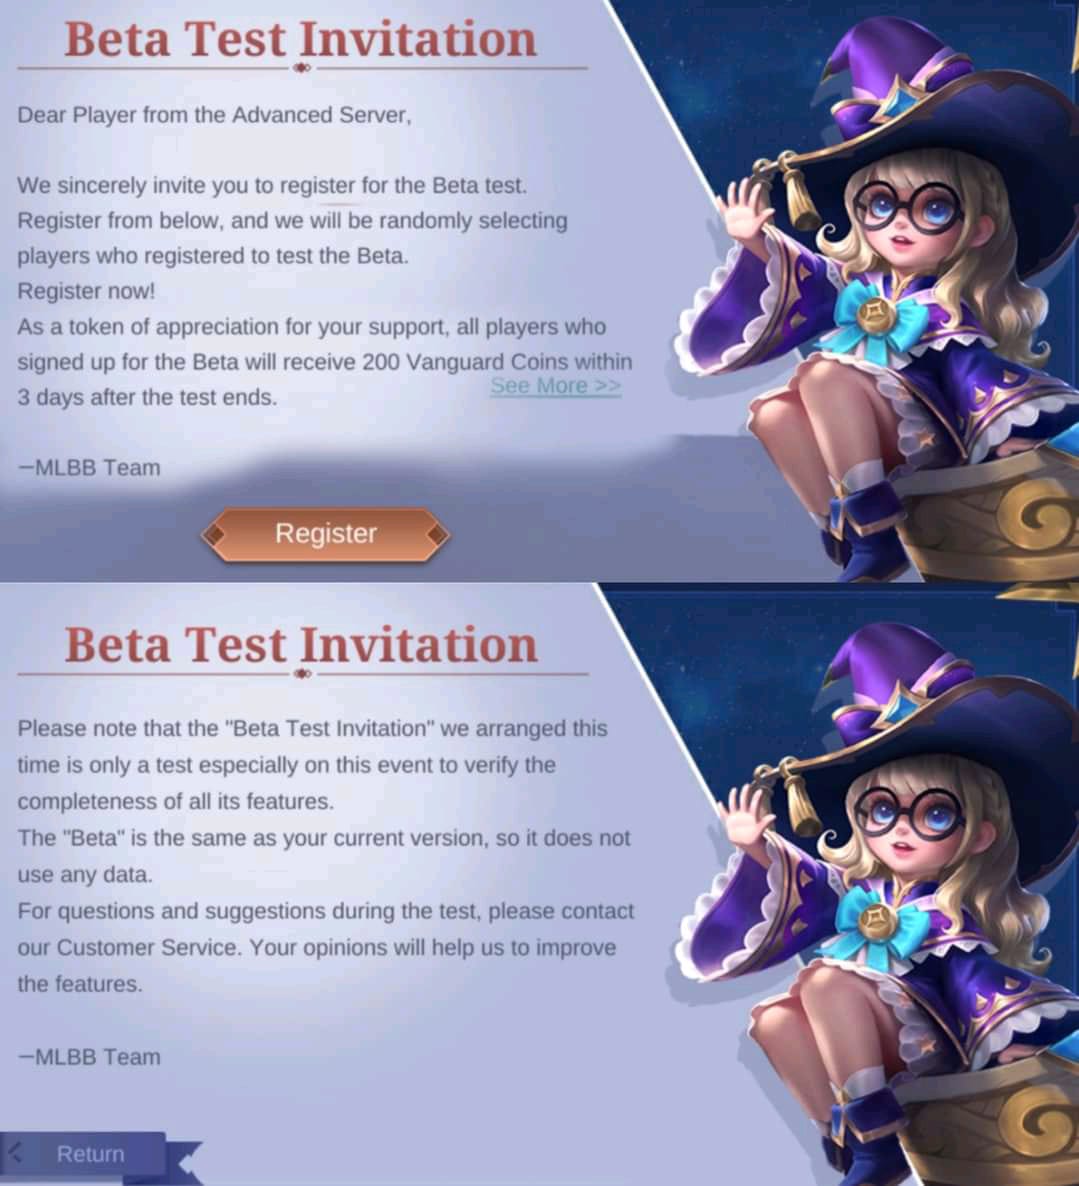 Mobile Legends Buka Tahap Beta Test Invitation Untuk Sejumlah Pemain